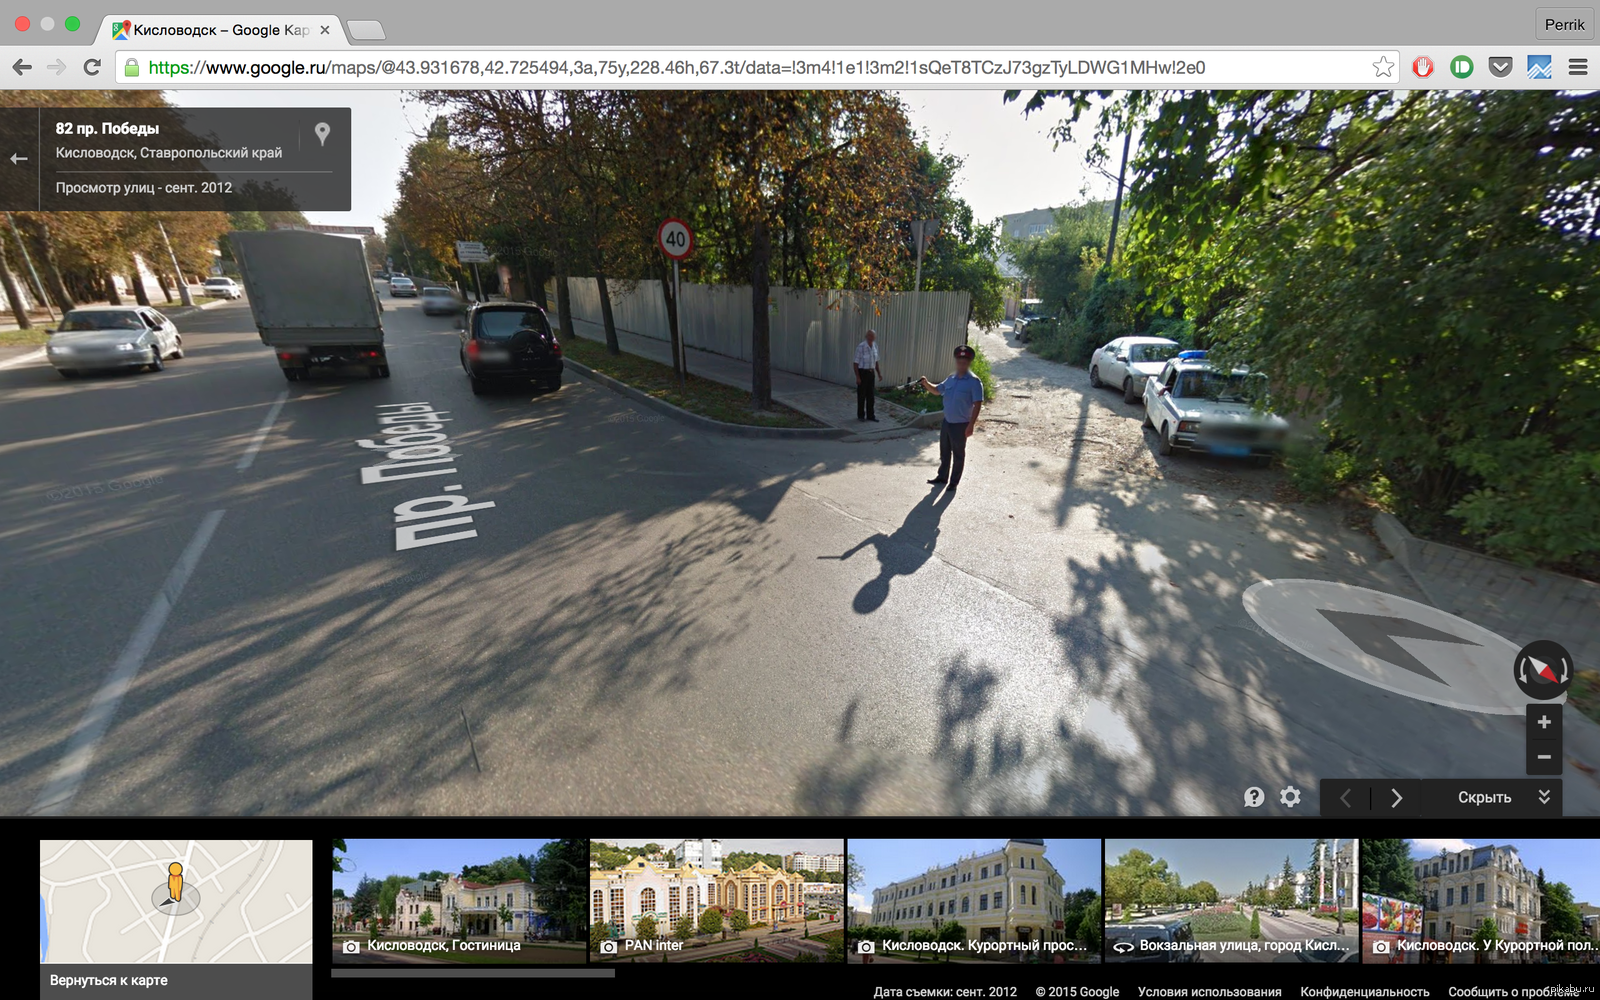 Гугл карты человечек ходить по улице. Гугл карты. Google Maps панорама. Гугл карты панорама улиц. Панорамные карты гугл.